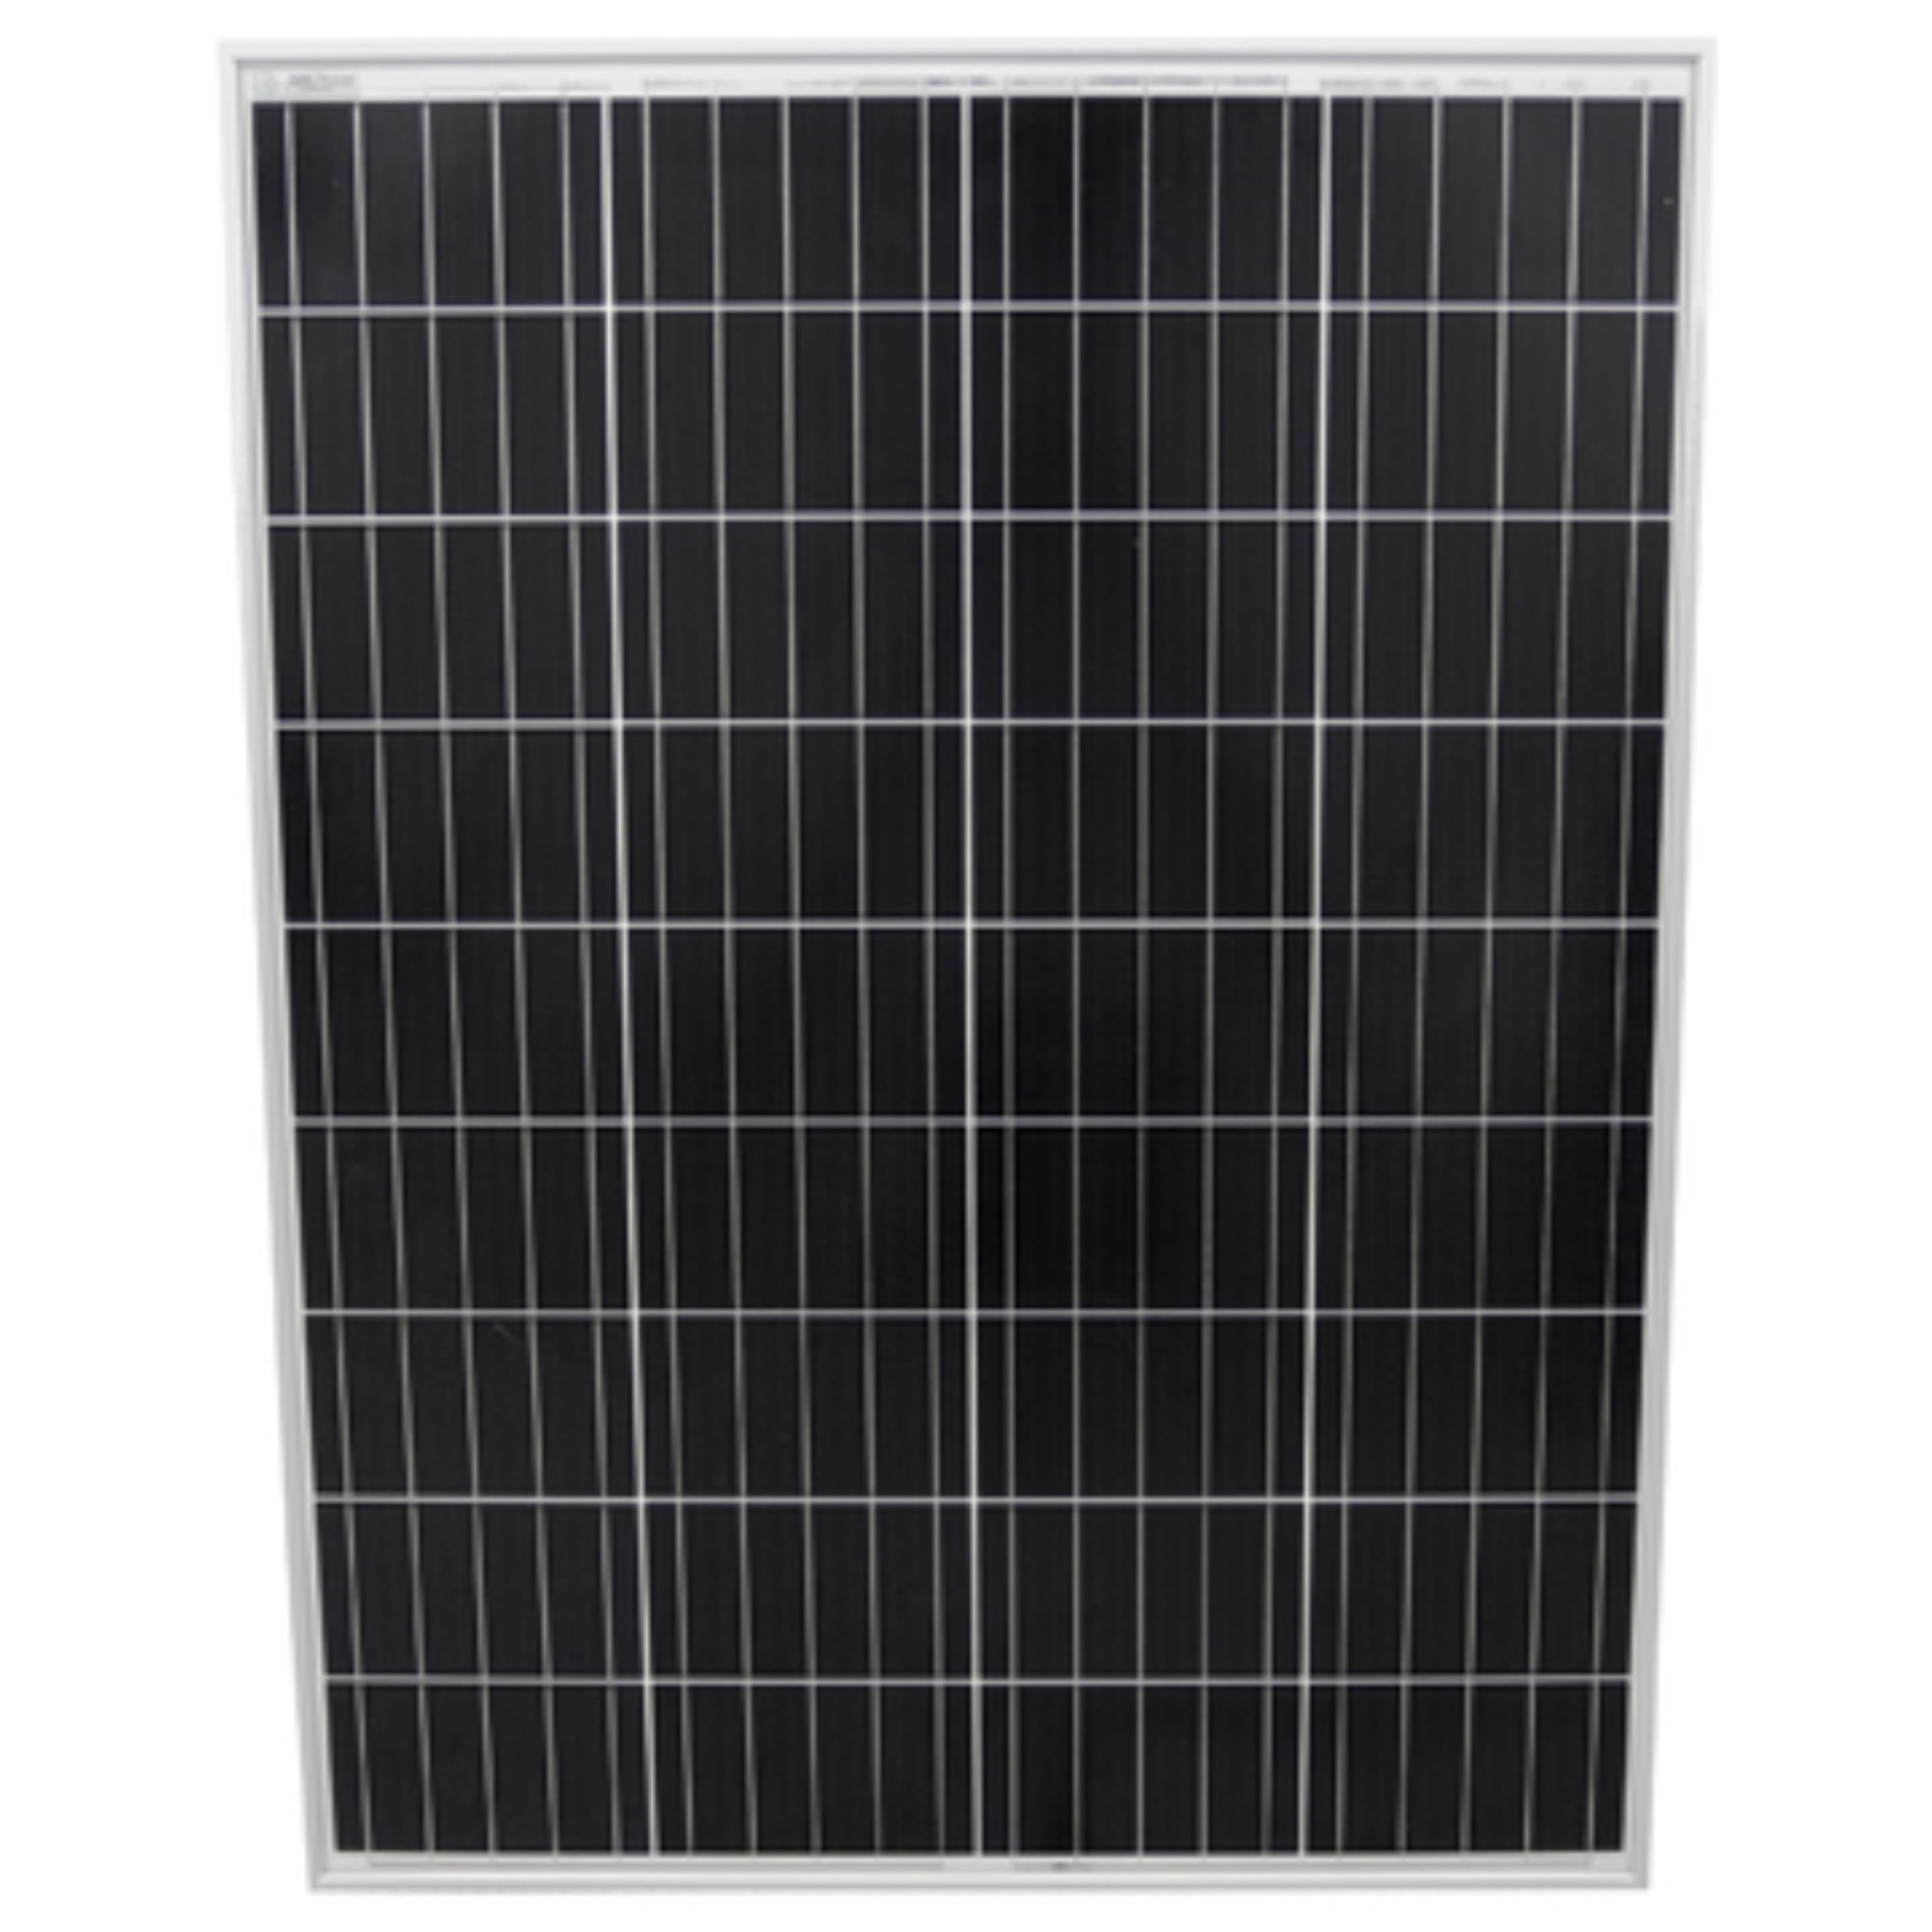 AIMS Power | 100 Watt Monocrystalline Solar Panel